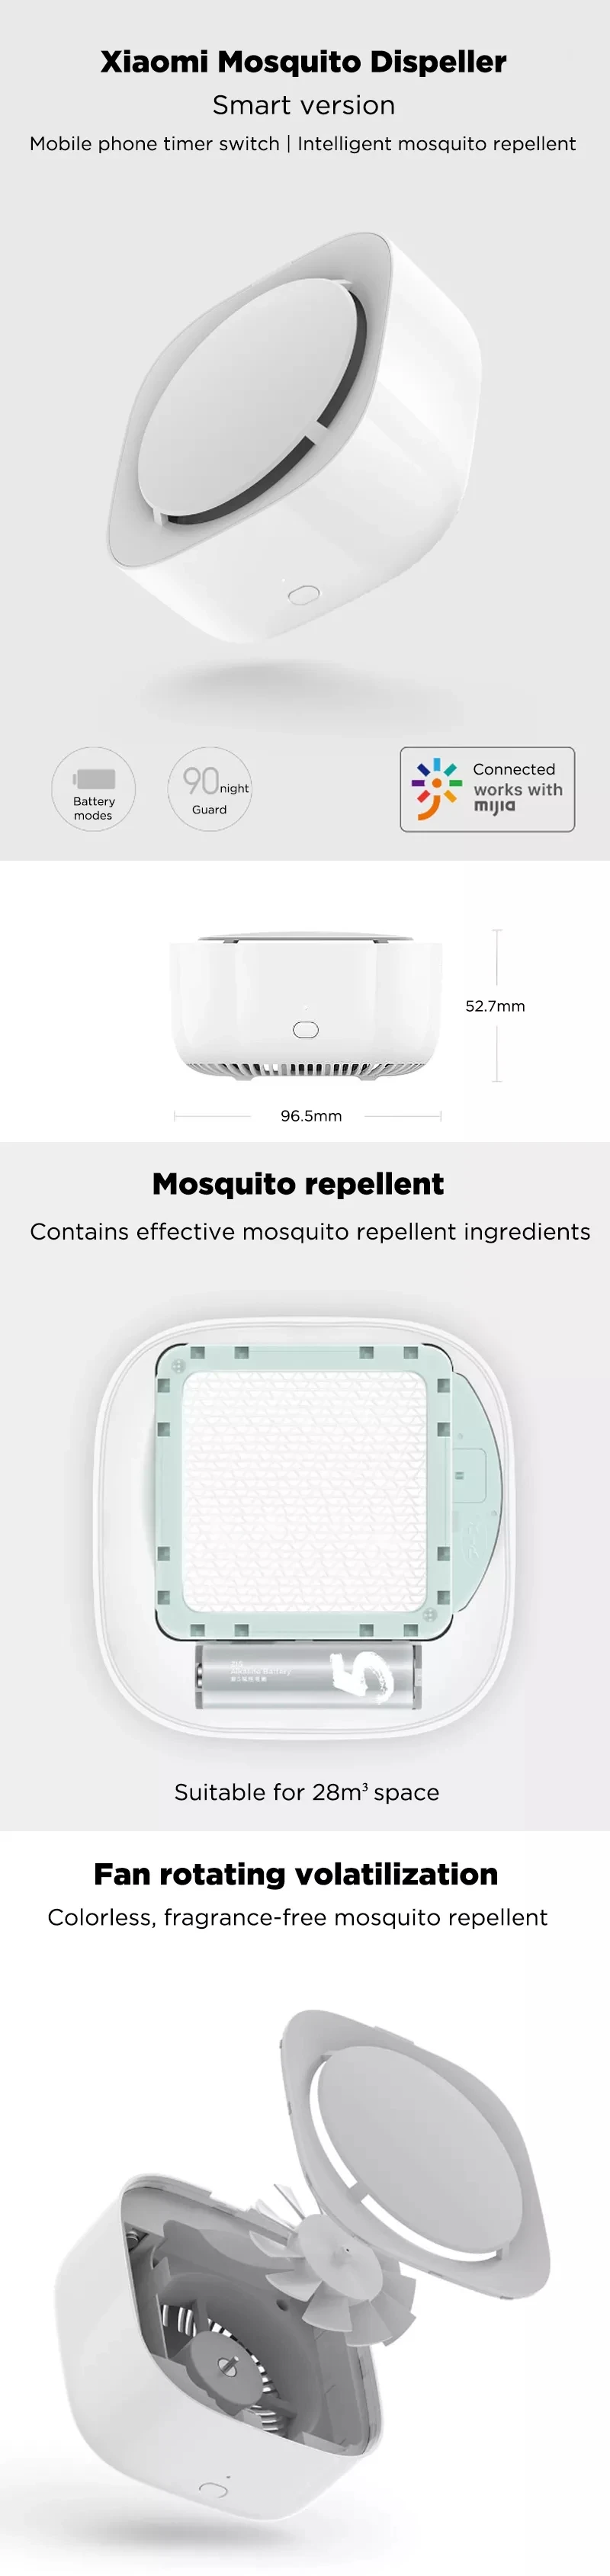 Xiaomi Mijia комаров убийца Функция времени без подогрева привод вентилятора для возгонки насекомых сменный репелленты H15